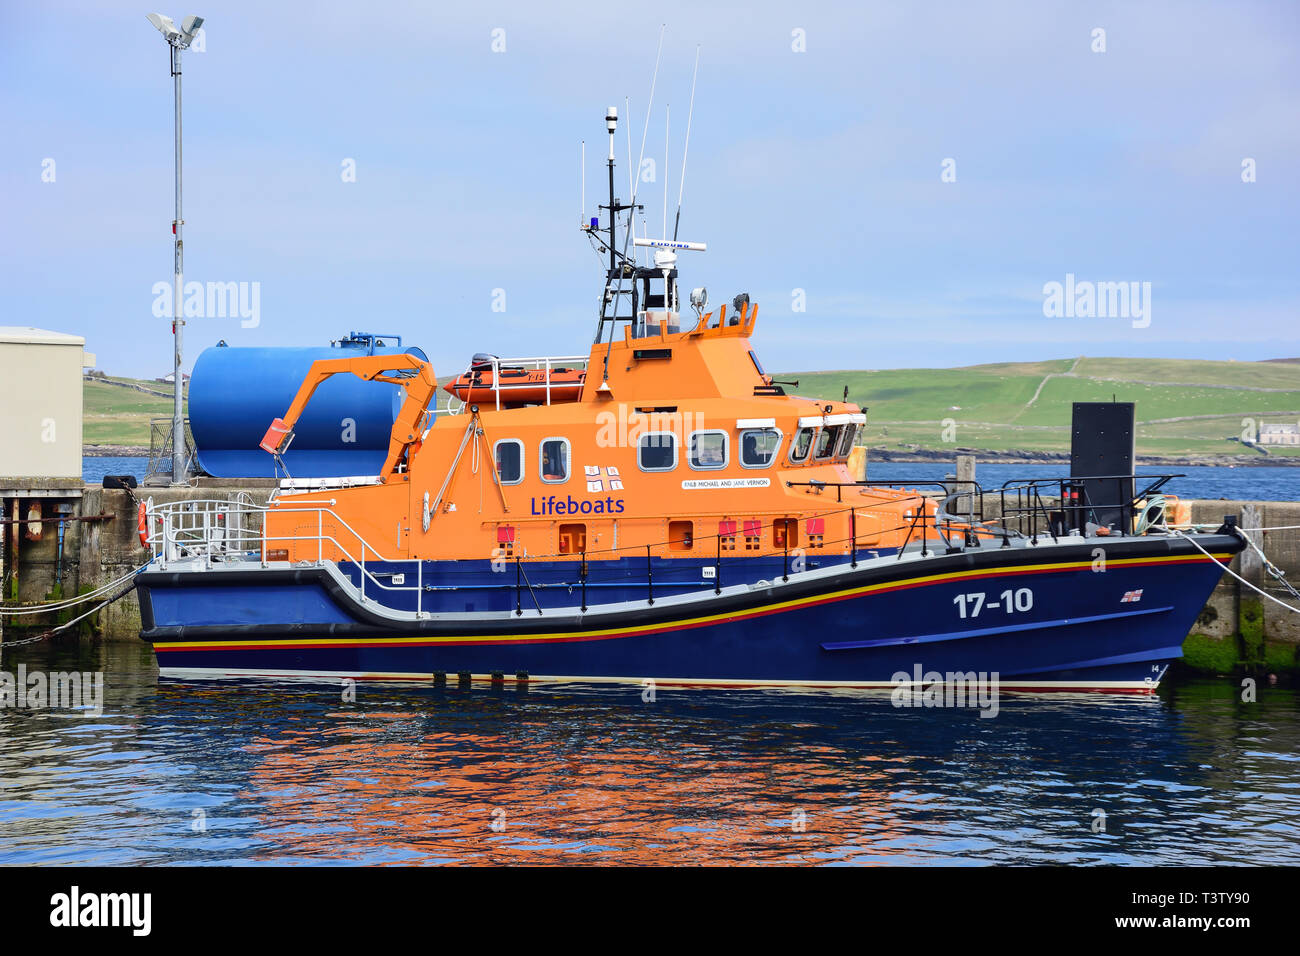 Das Royal National Lifeboat Institution (RNLI) Rettungsboot im Hafen, Lerwick, Shetland, Nördliche Inseln, Schottland, Vereinigtes Königreich Stockfoto